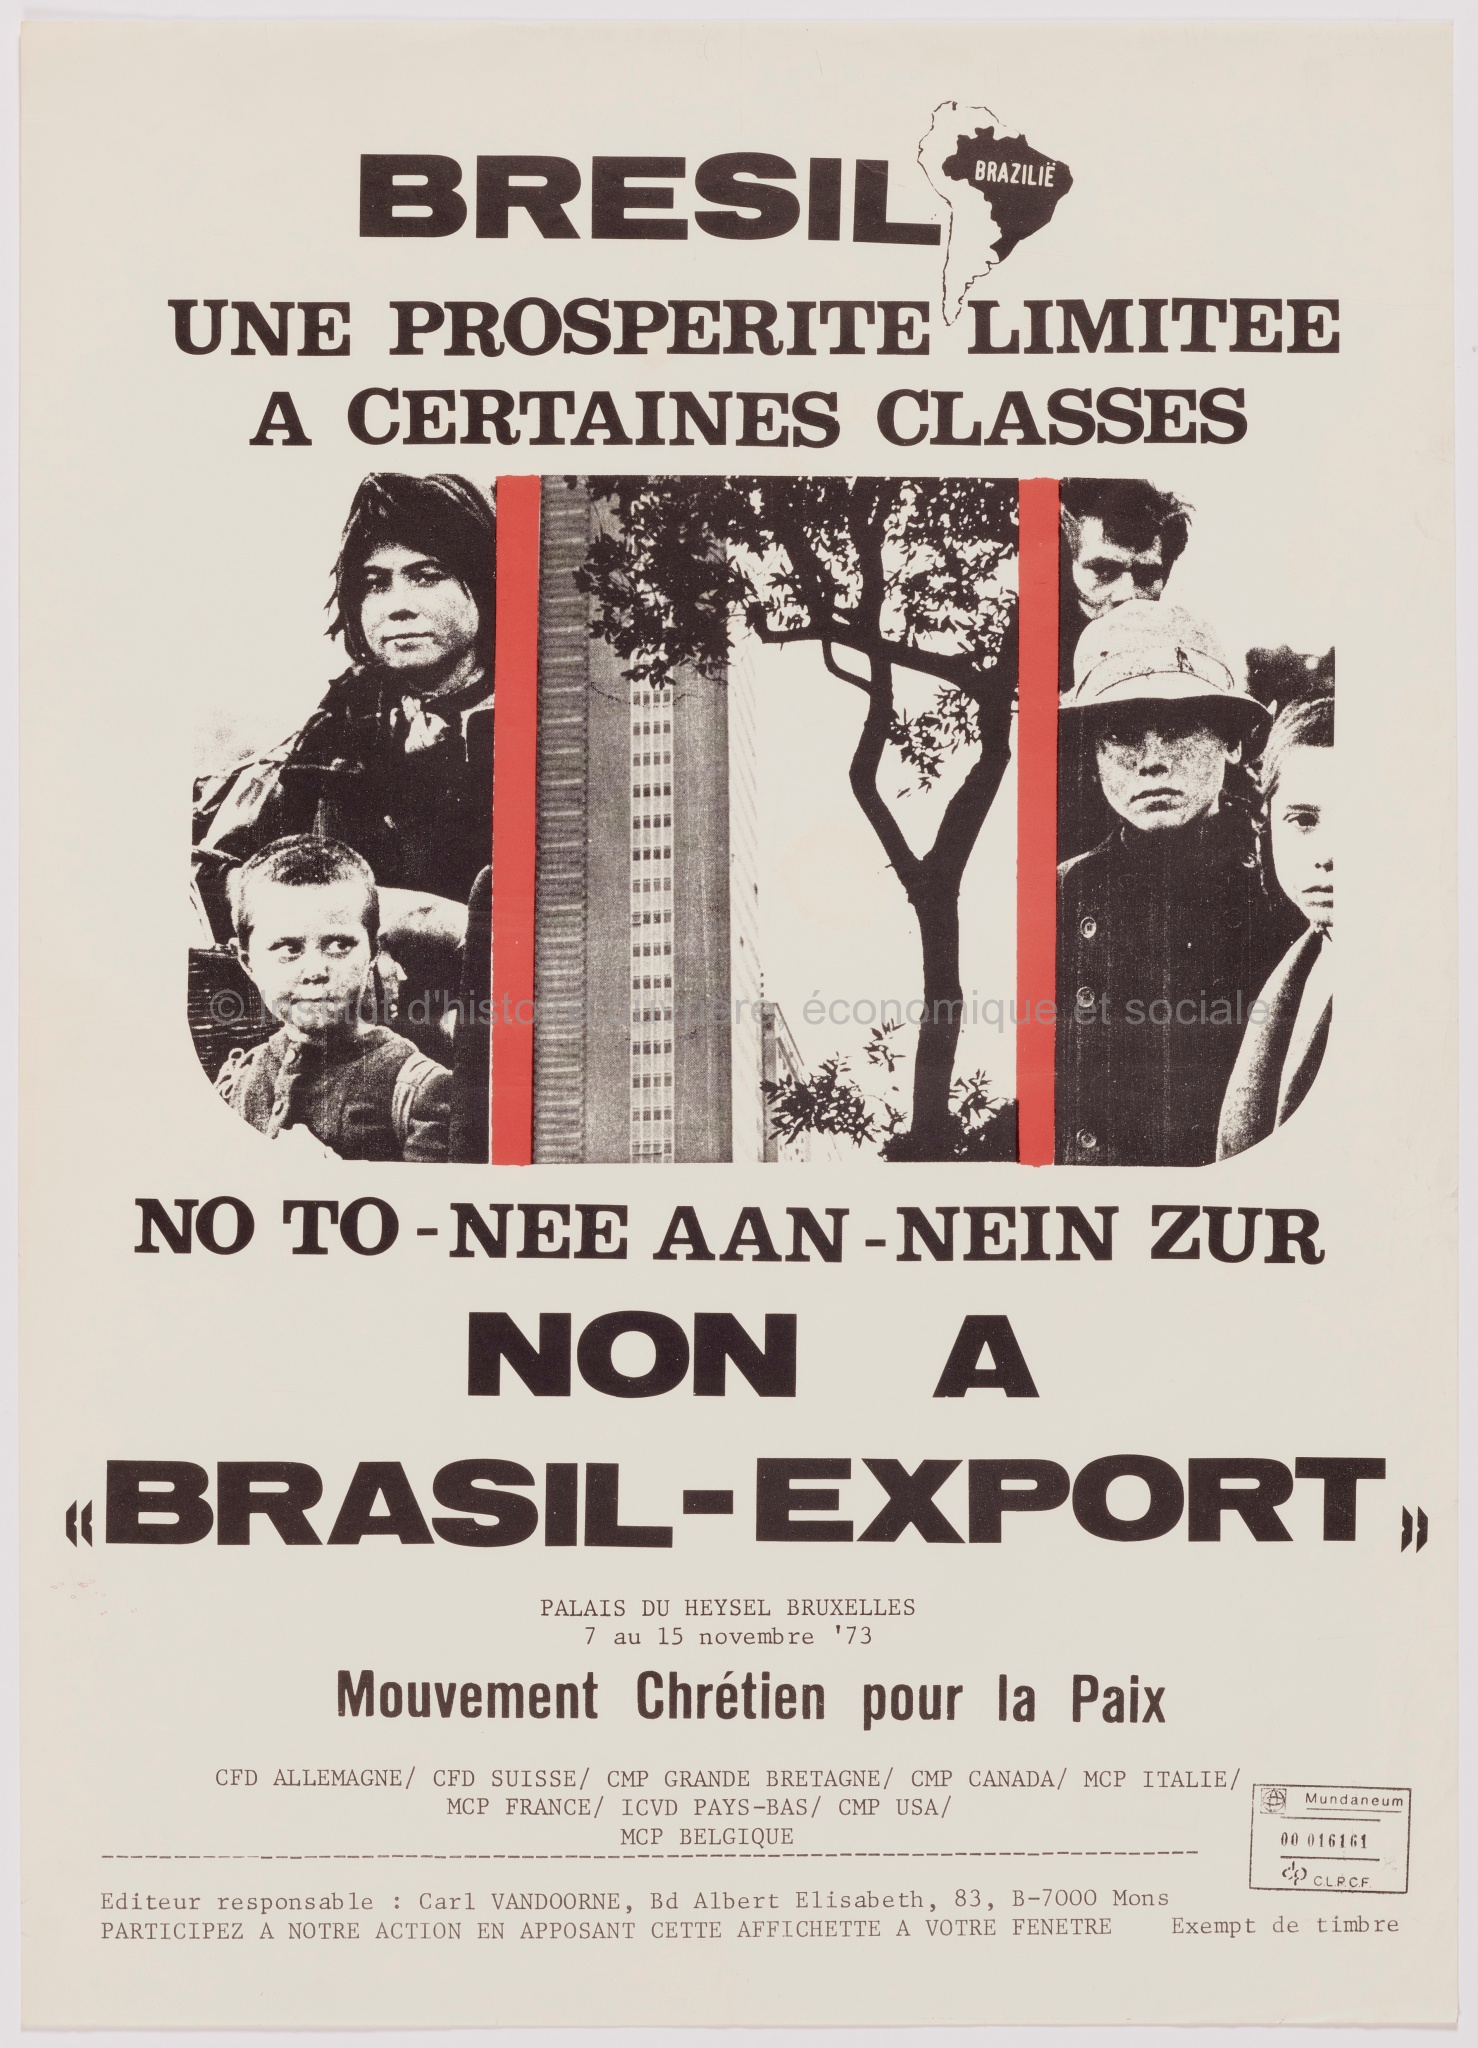 Brésil, une prospérité limités à certaines classes : non à Brasil-export : Palais du Heysel, 7 au 15 novembre 73